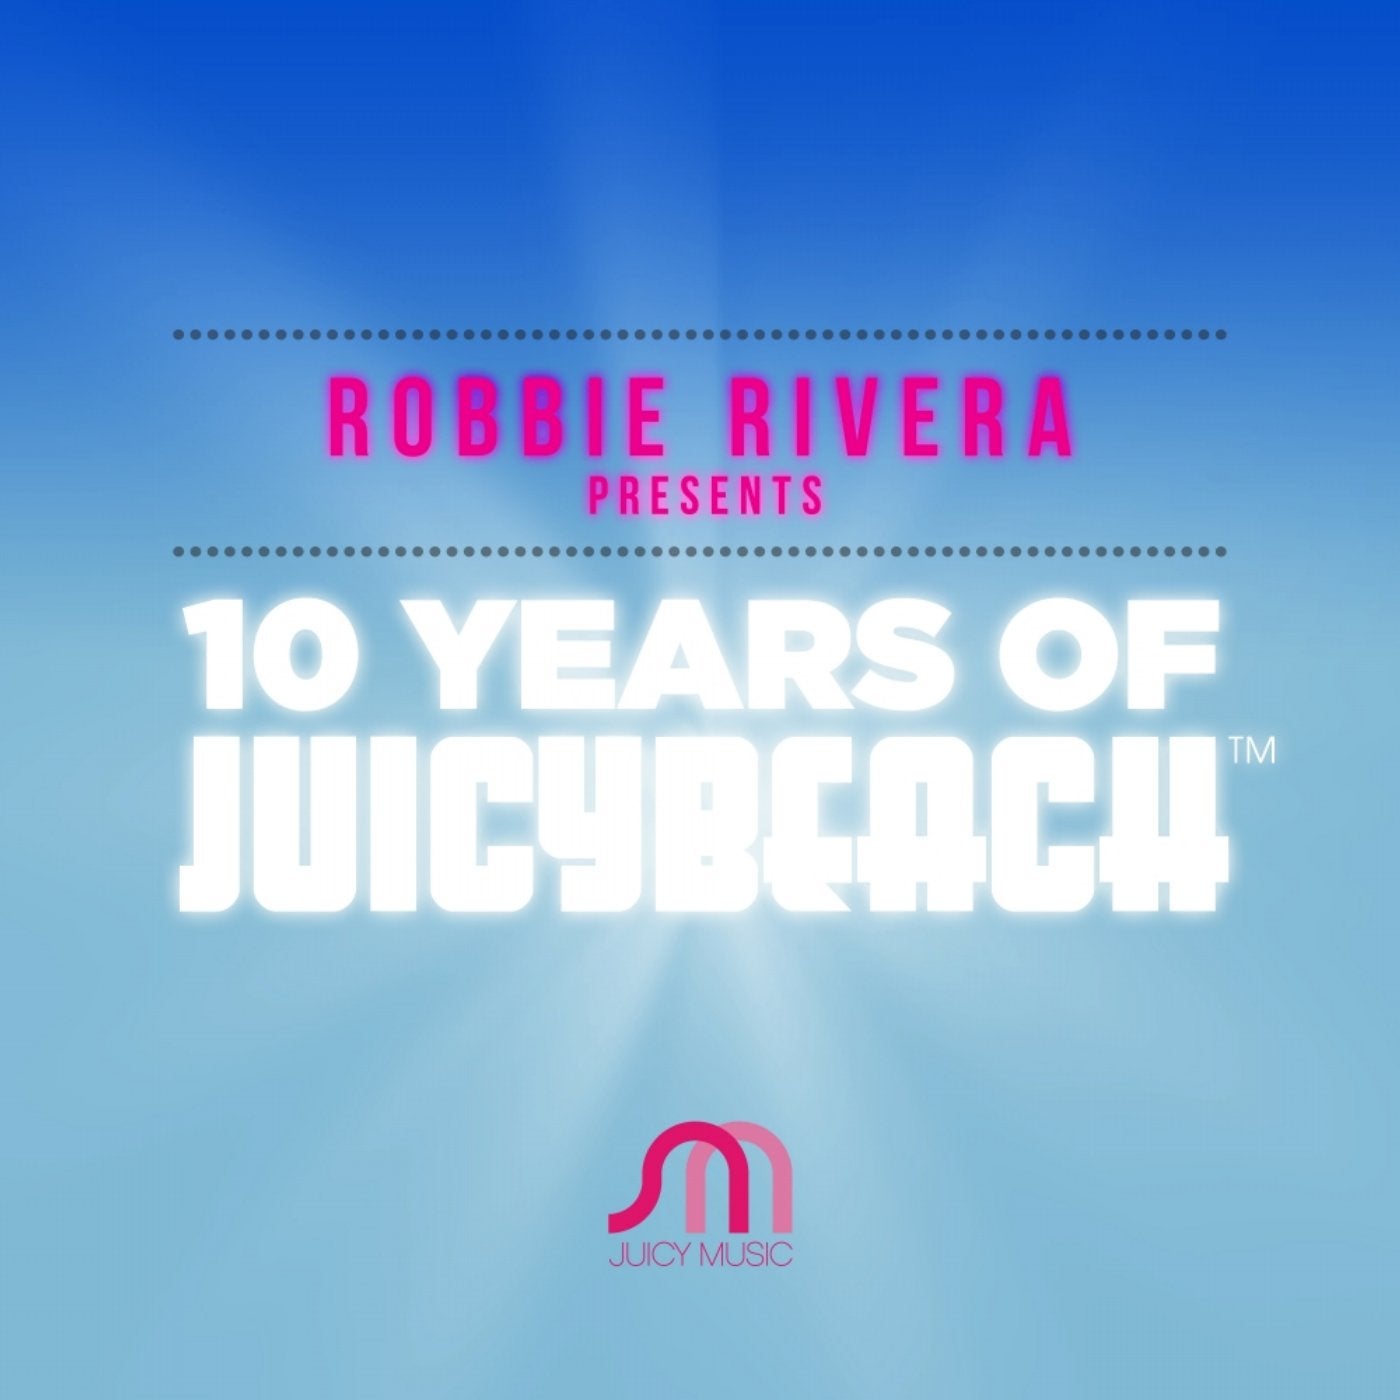 10 Years of Juicy Beach